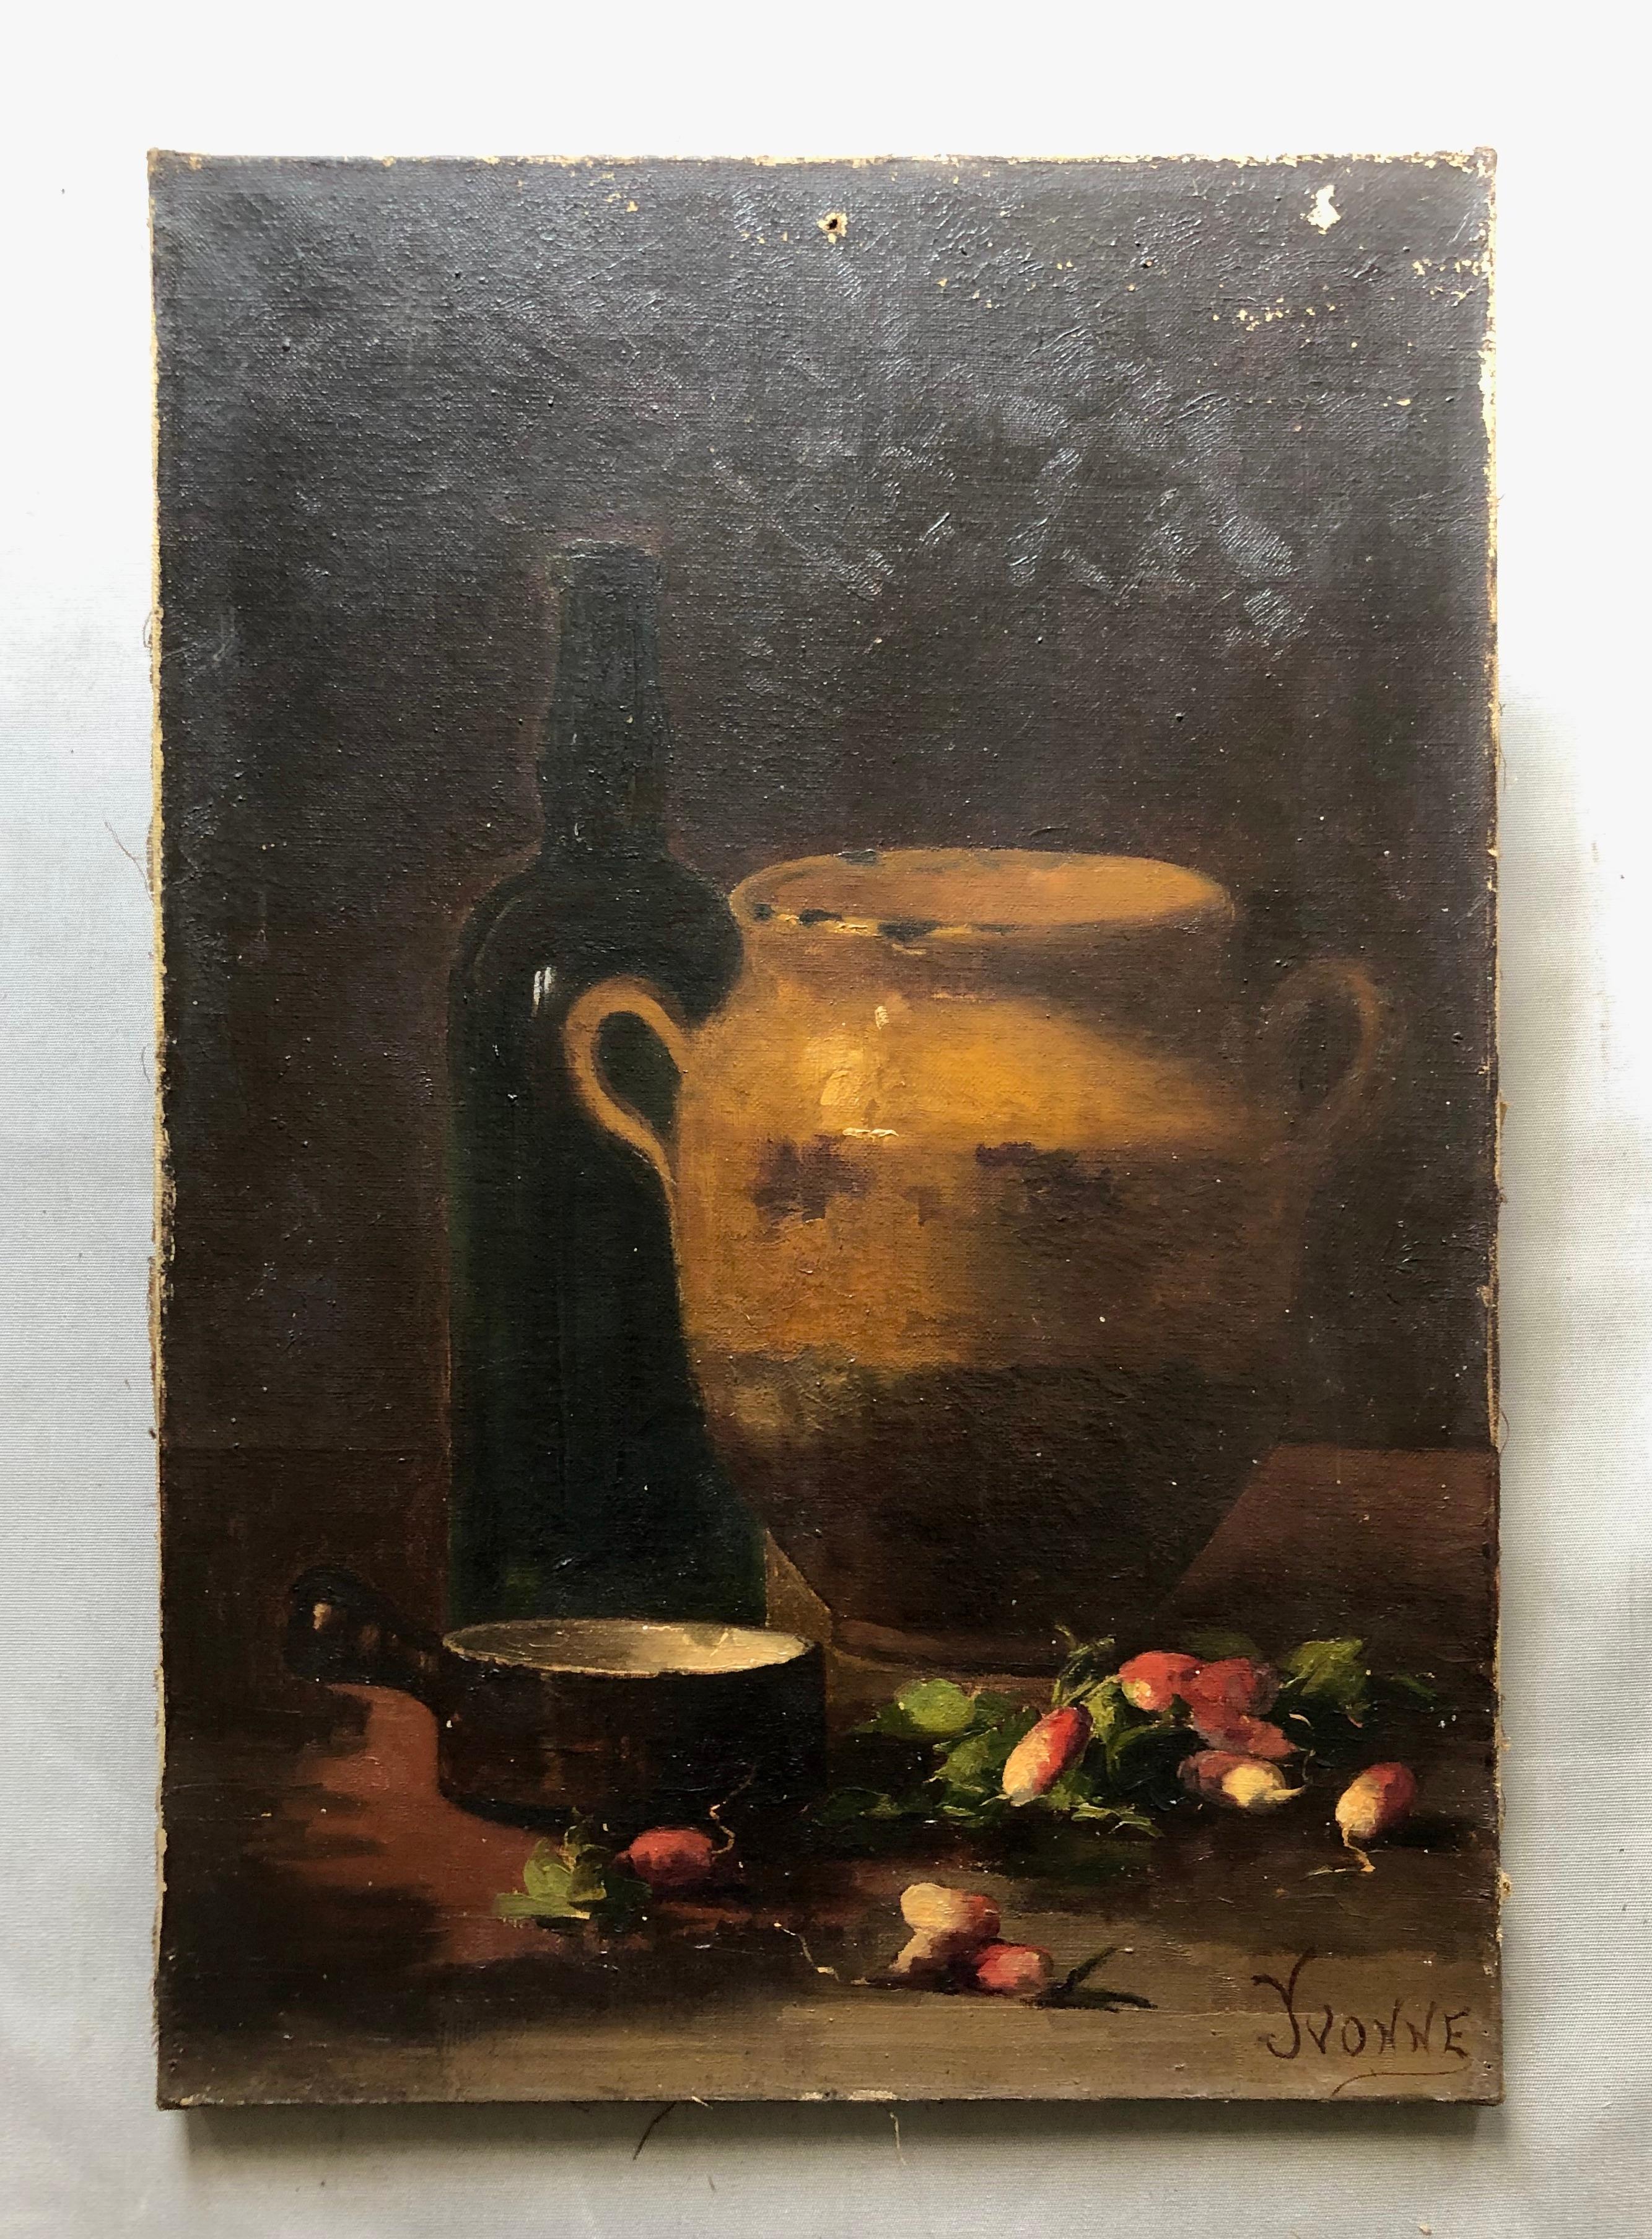 Stillleben mit Strahlen, Öl auf Leinwand, 19. Jahrhundert, signiert Yvonne – Painting von Unknown